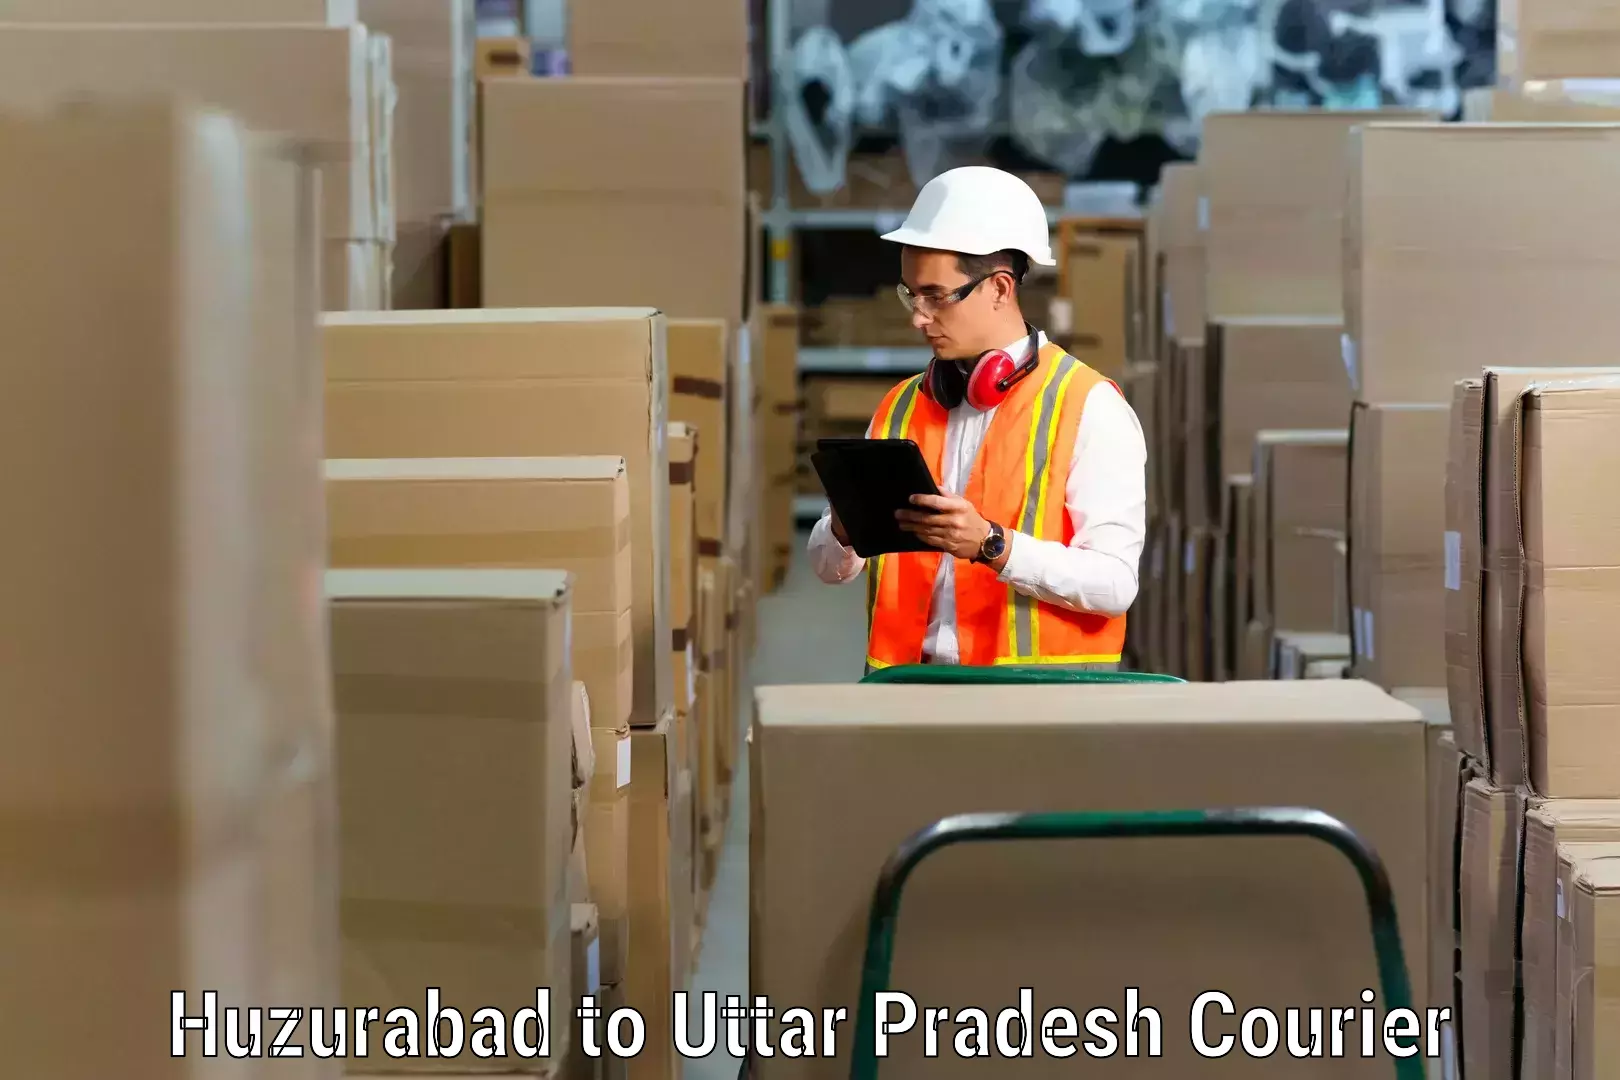 Professional moving company Huzurabad to Shiv Nadar University Dadri